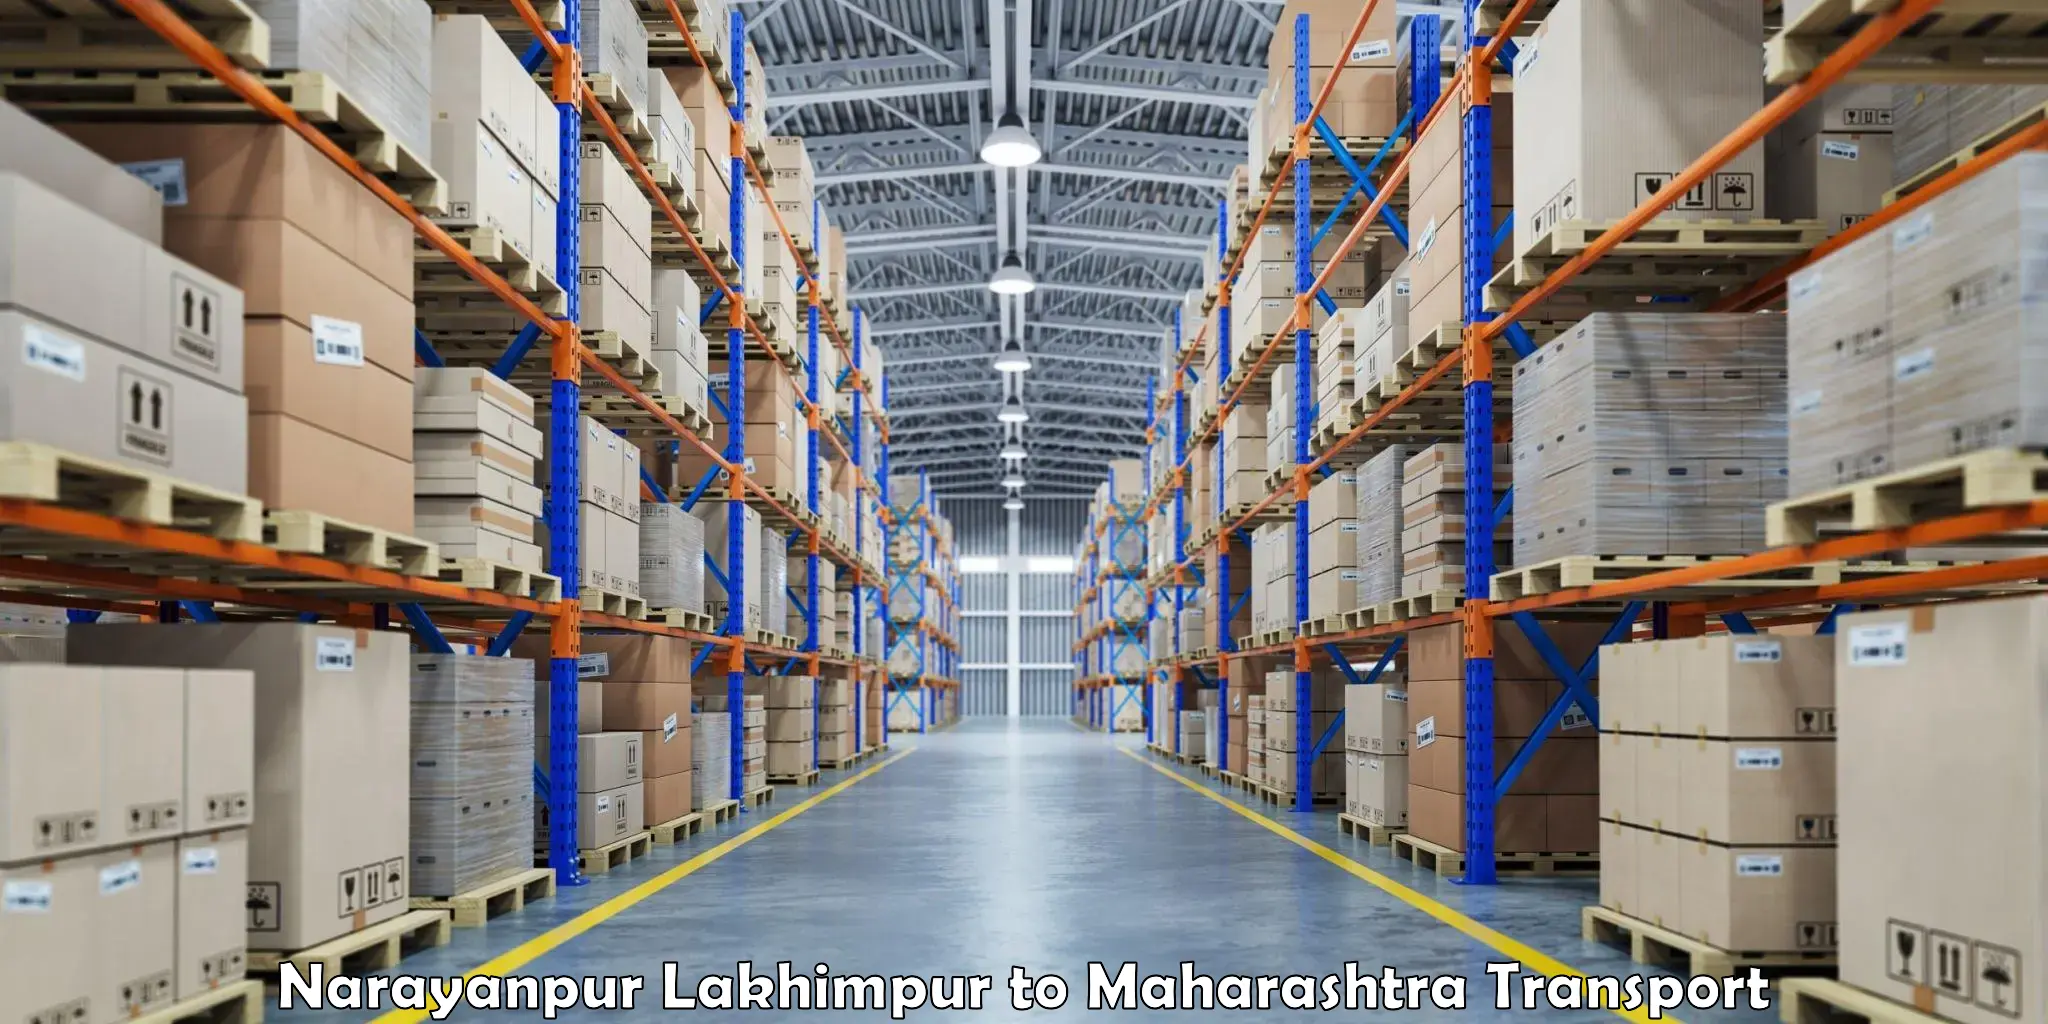 Shipping partner Narayanpur Lakhimpur to Dusarbid